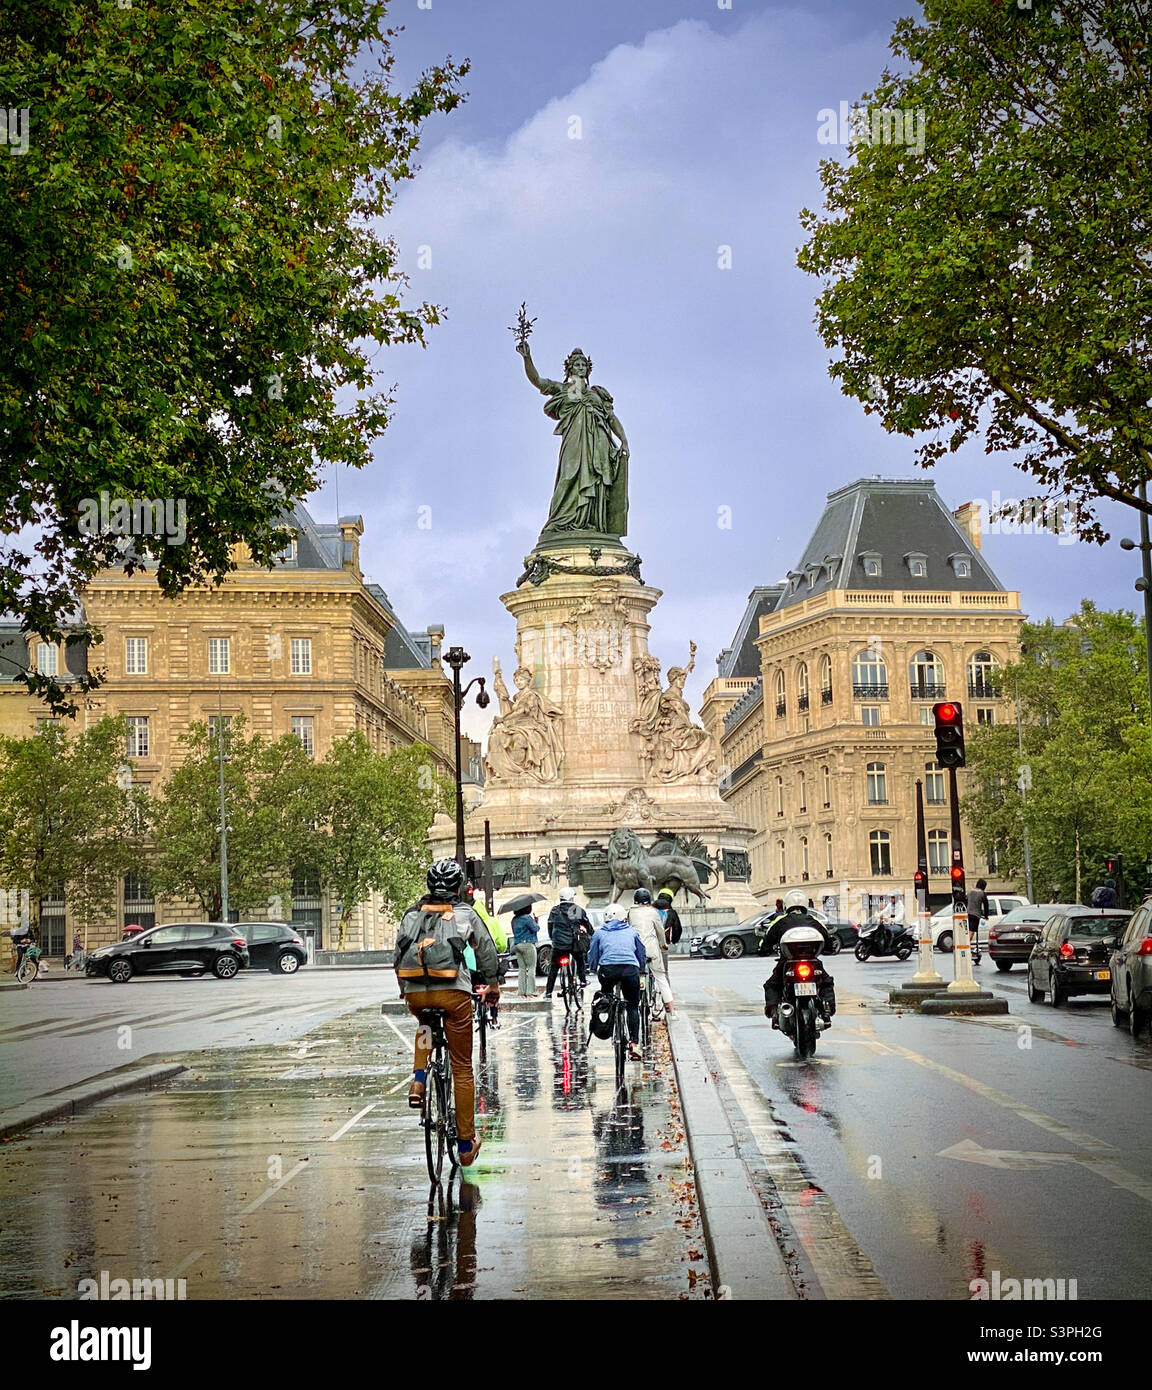 Commuting by bike on a rainy Paris day. Place de la République, Paris, France Stock Photo